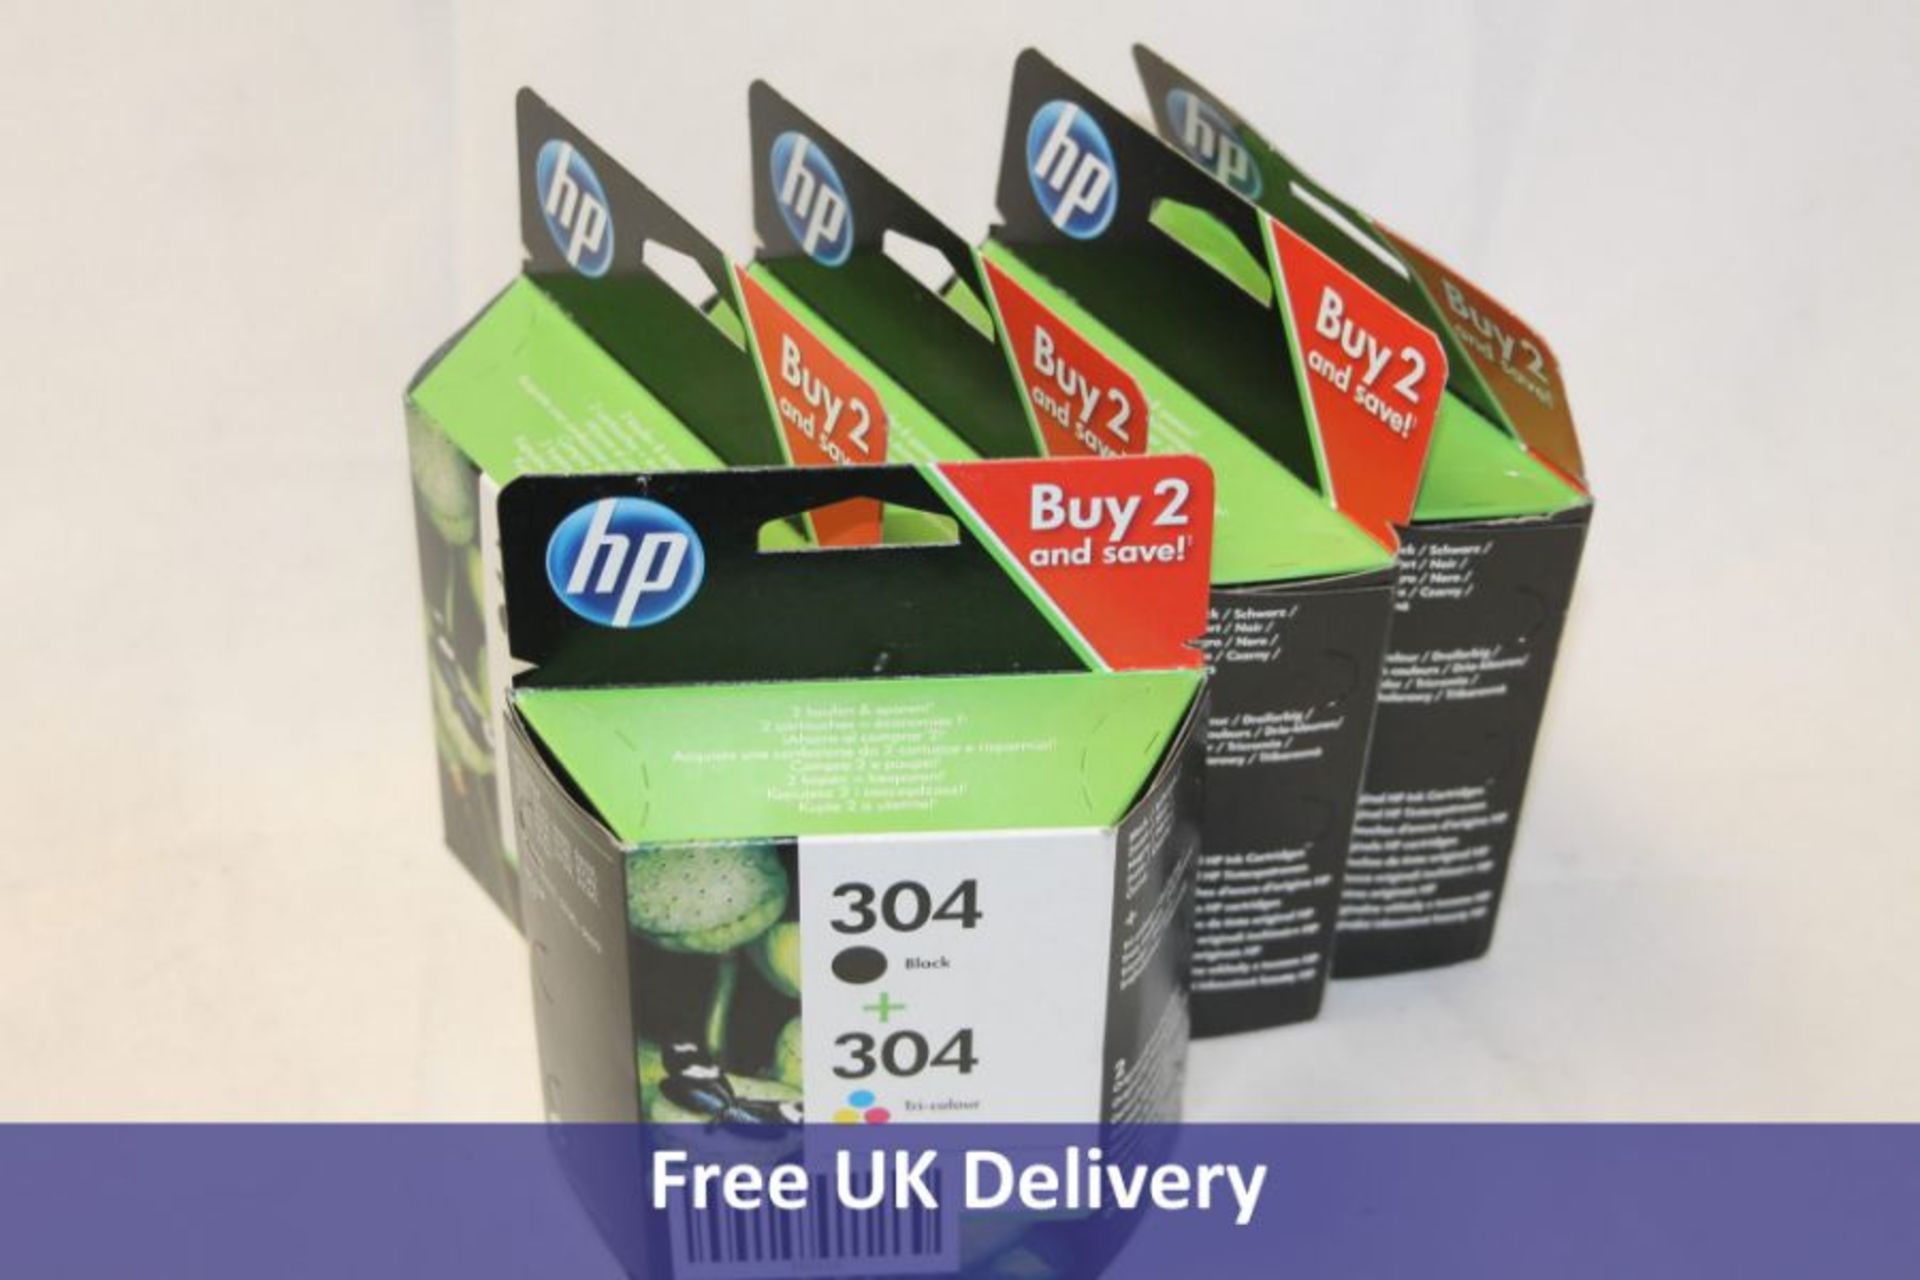 Five HP 304 Black plus 304 Tri Colour 2 Pack Ink Cartridges